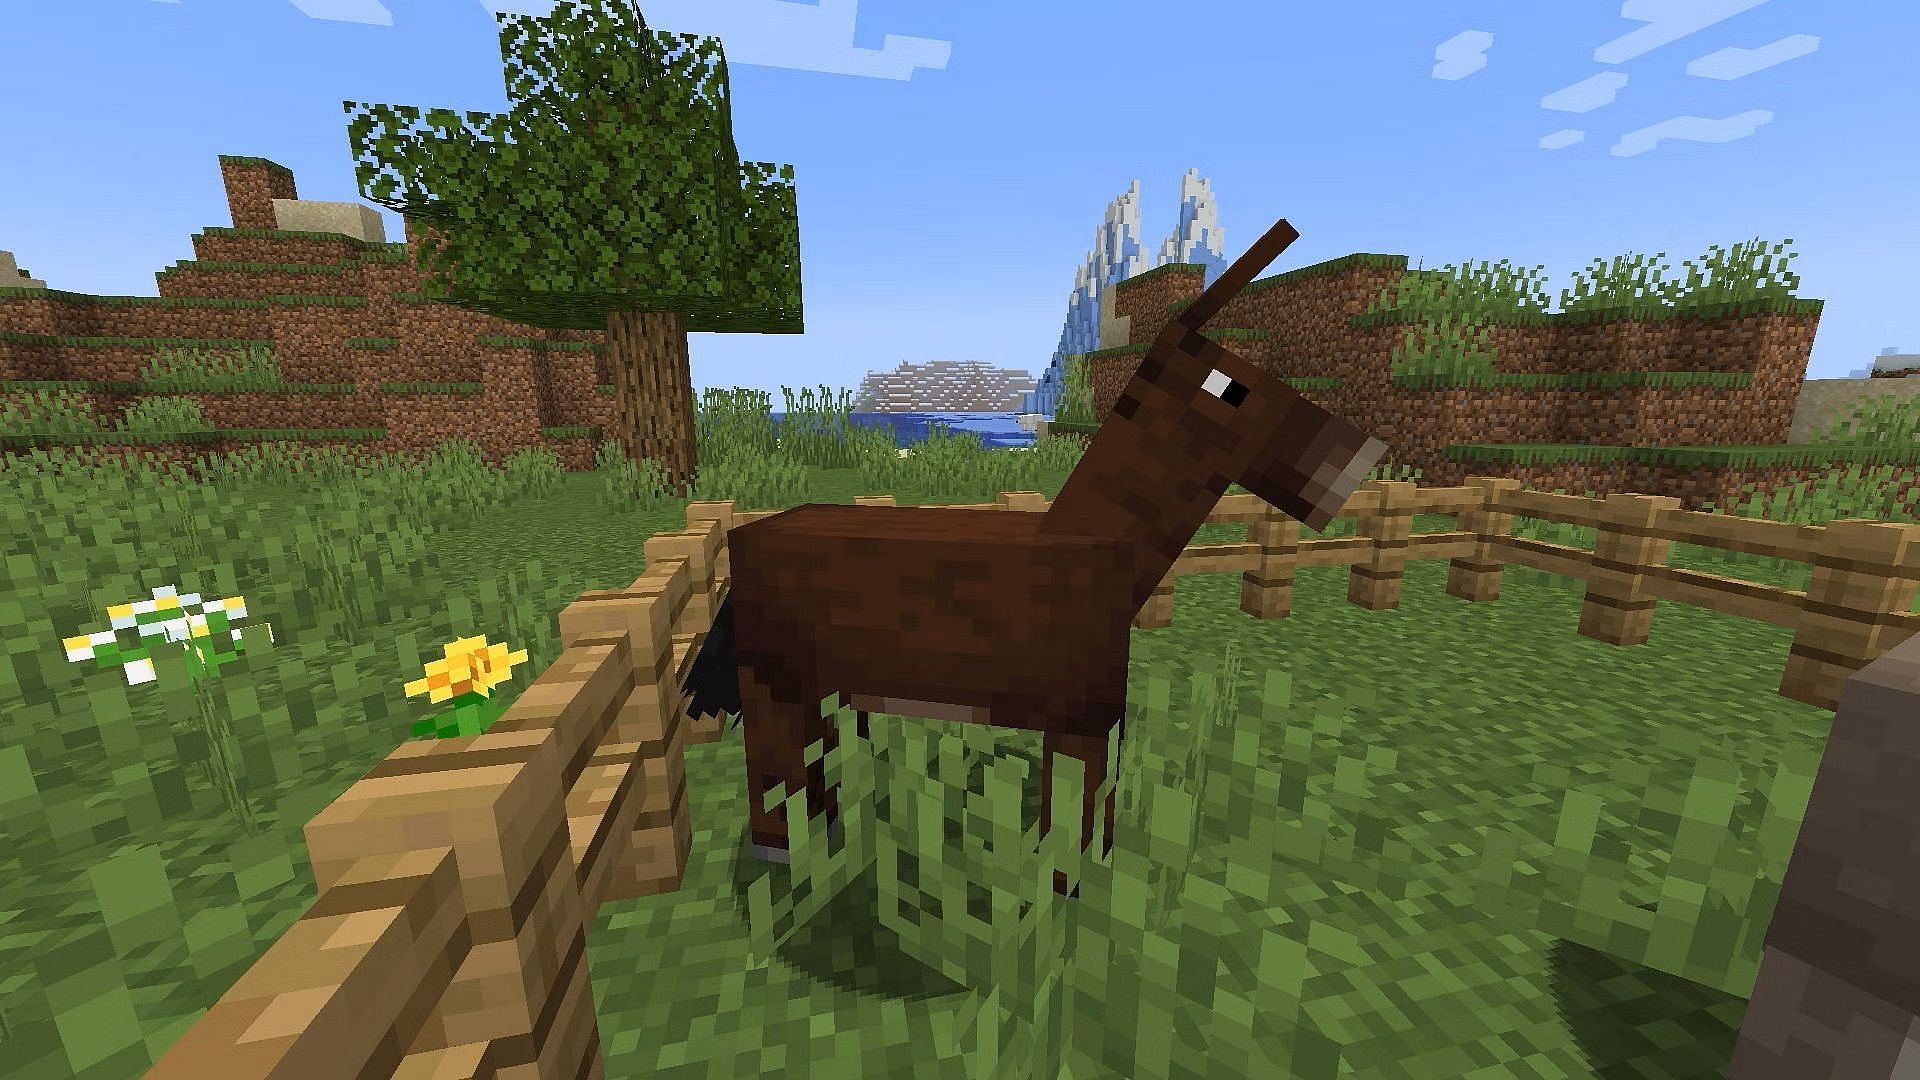 Mule in Minecraft (Image via Mojang)